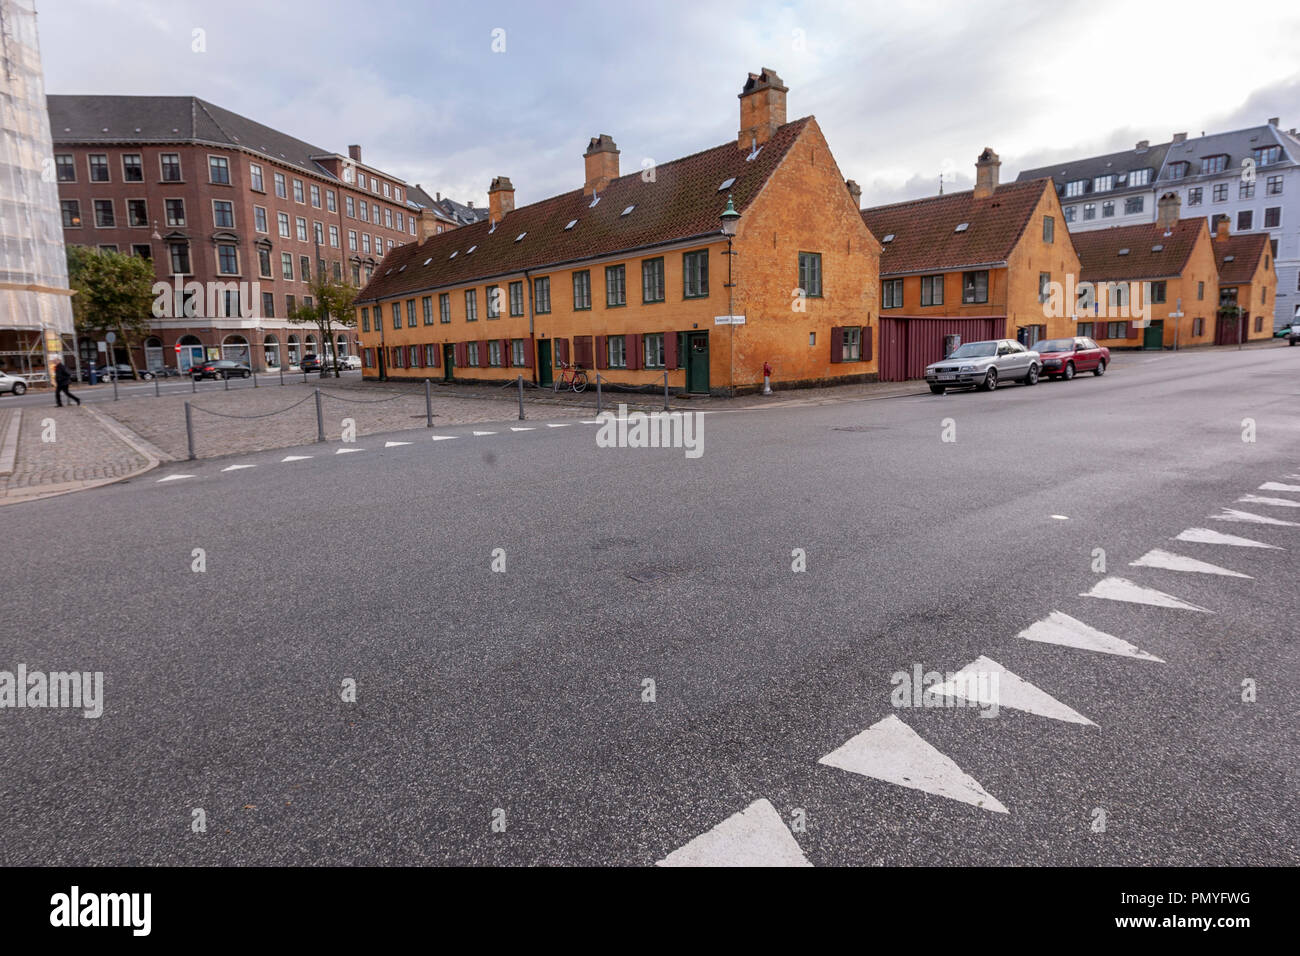 Nyboder, une maison en rangée historique de l'ancien quartier de la caserne de la marine , Copenhague, Danemark Banque D'Images